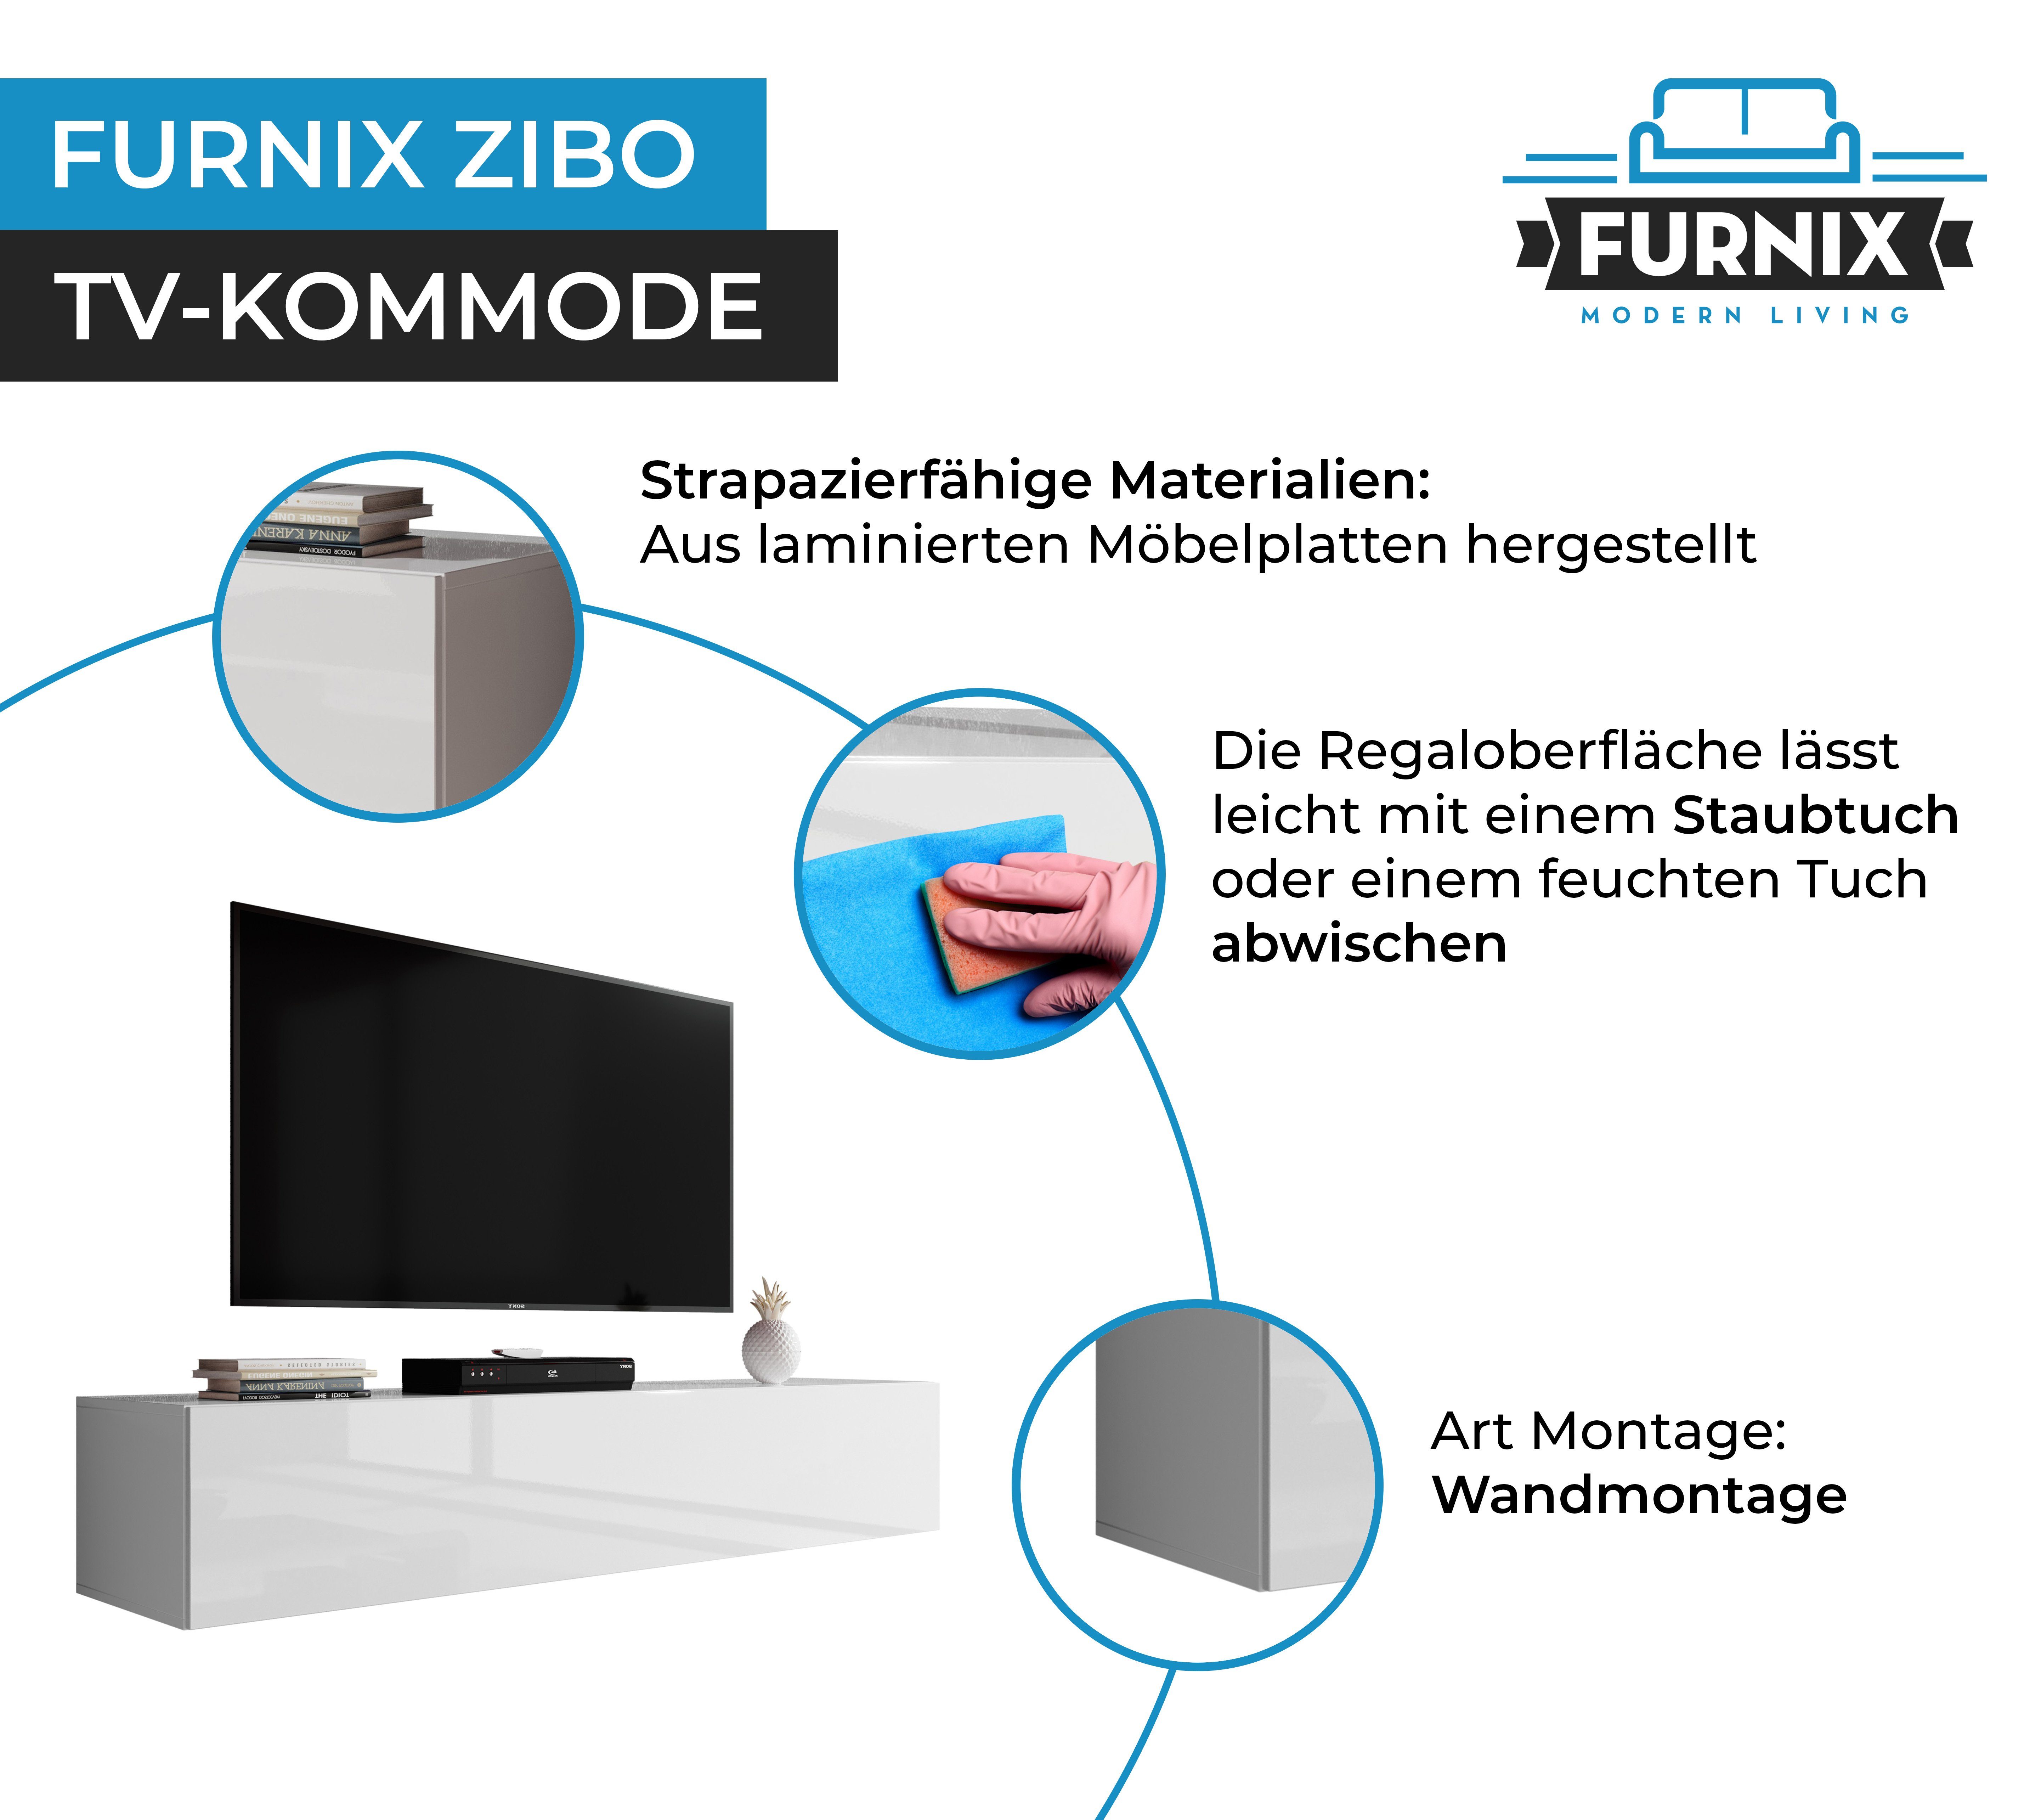 Furnix TV-Board Hängeboard TV-Schrank cm, Tiefe Lowboard ZIBO Breite Weiß-Hochglanz 34 cm 40 Höhe cm, 160 modern